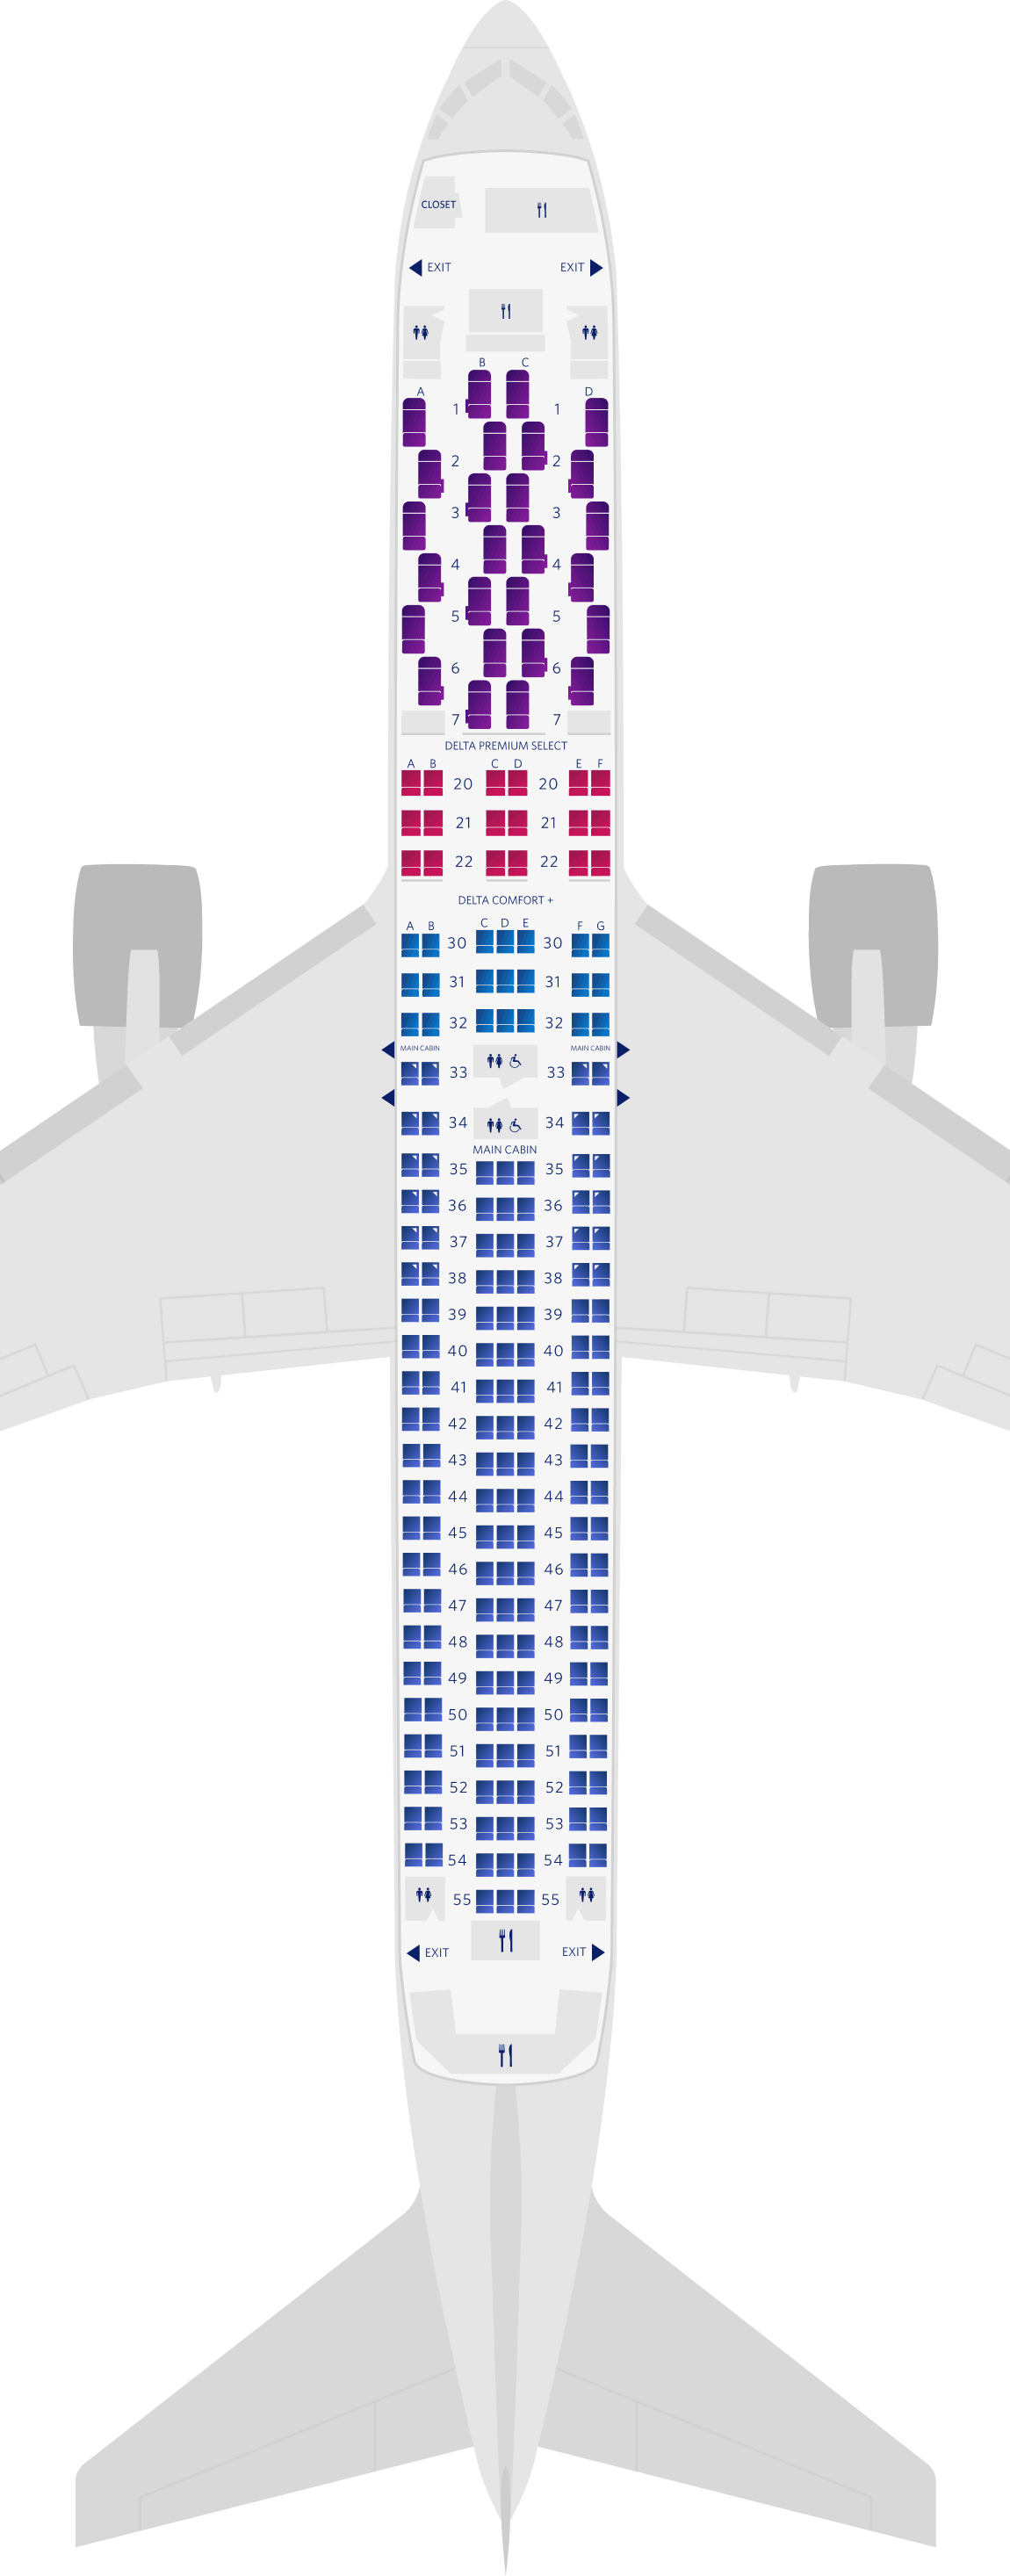 波音767-300ER (76K)座位图